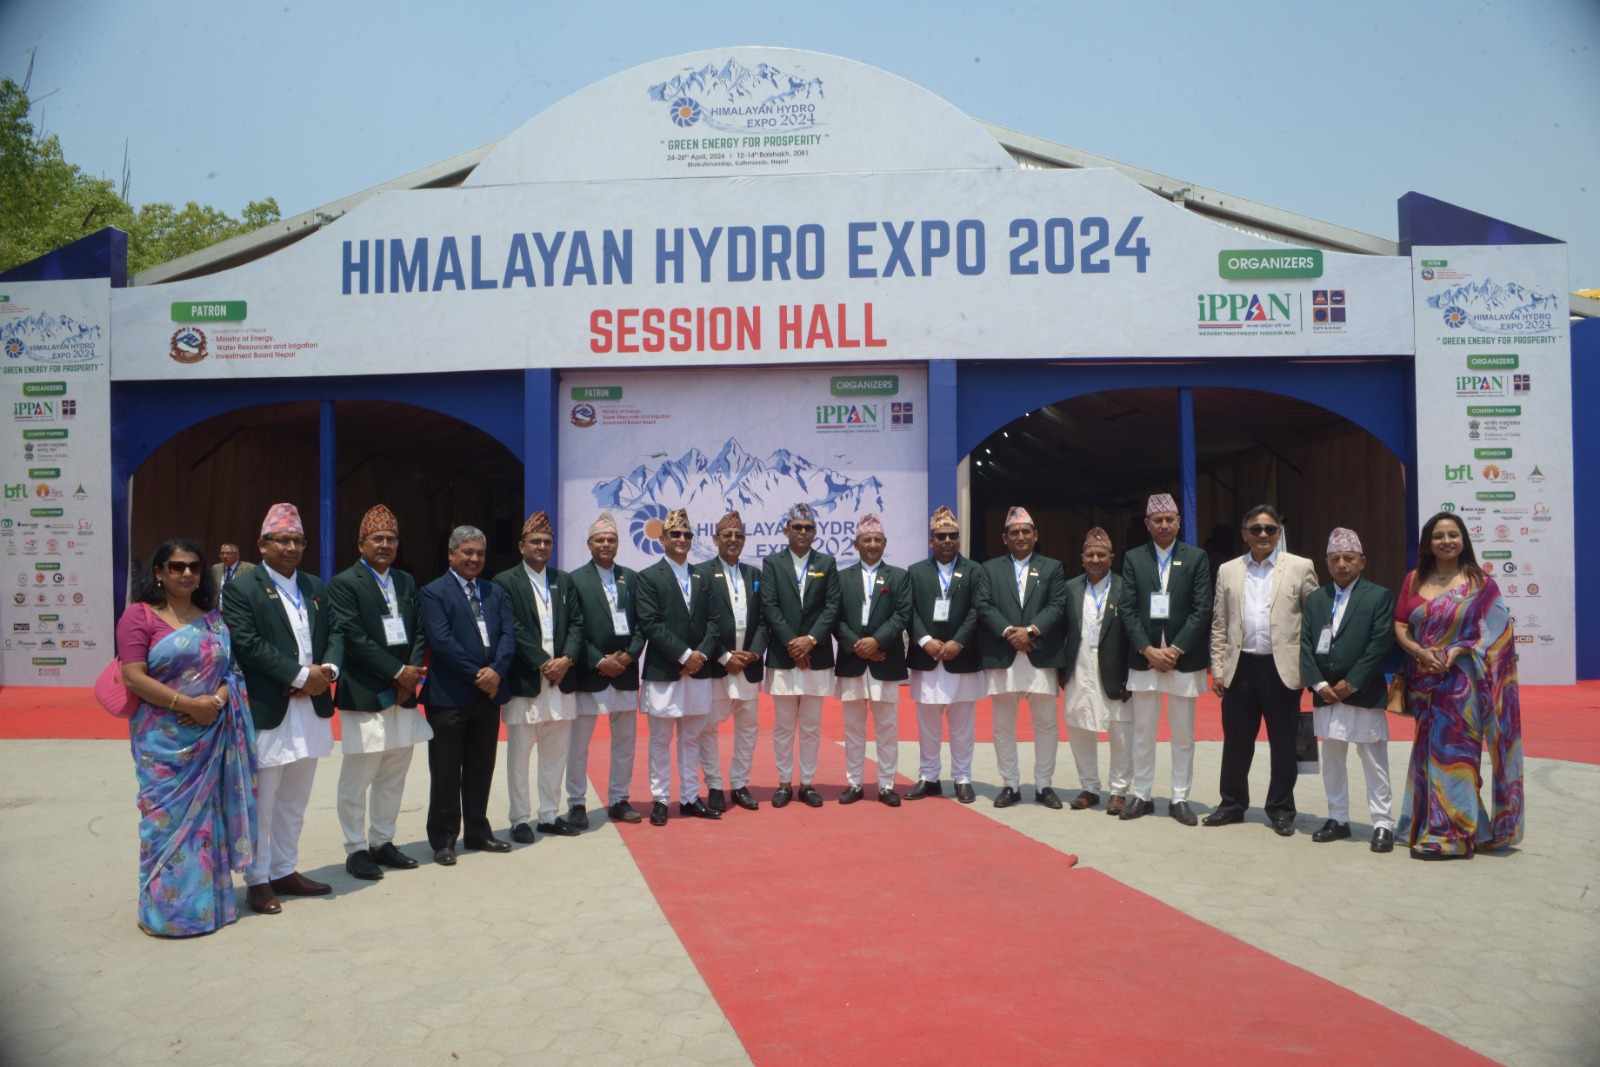 हिमालयन हाइड्रो एक्स्पो : ग्रीन हाइड्रोजन परियोजनामा कन्सियस इनर्जी-केयू र उर्जा डेभेलपर्सको सहकार्य